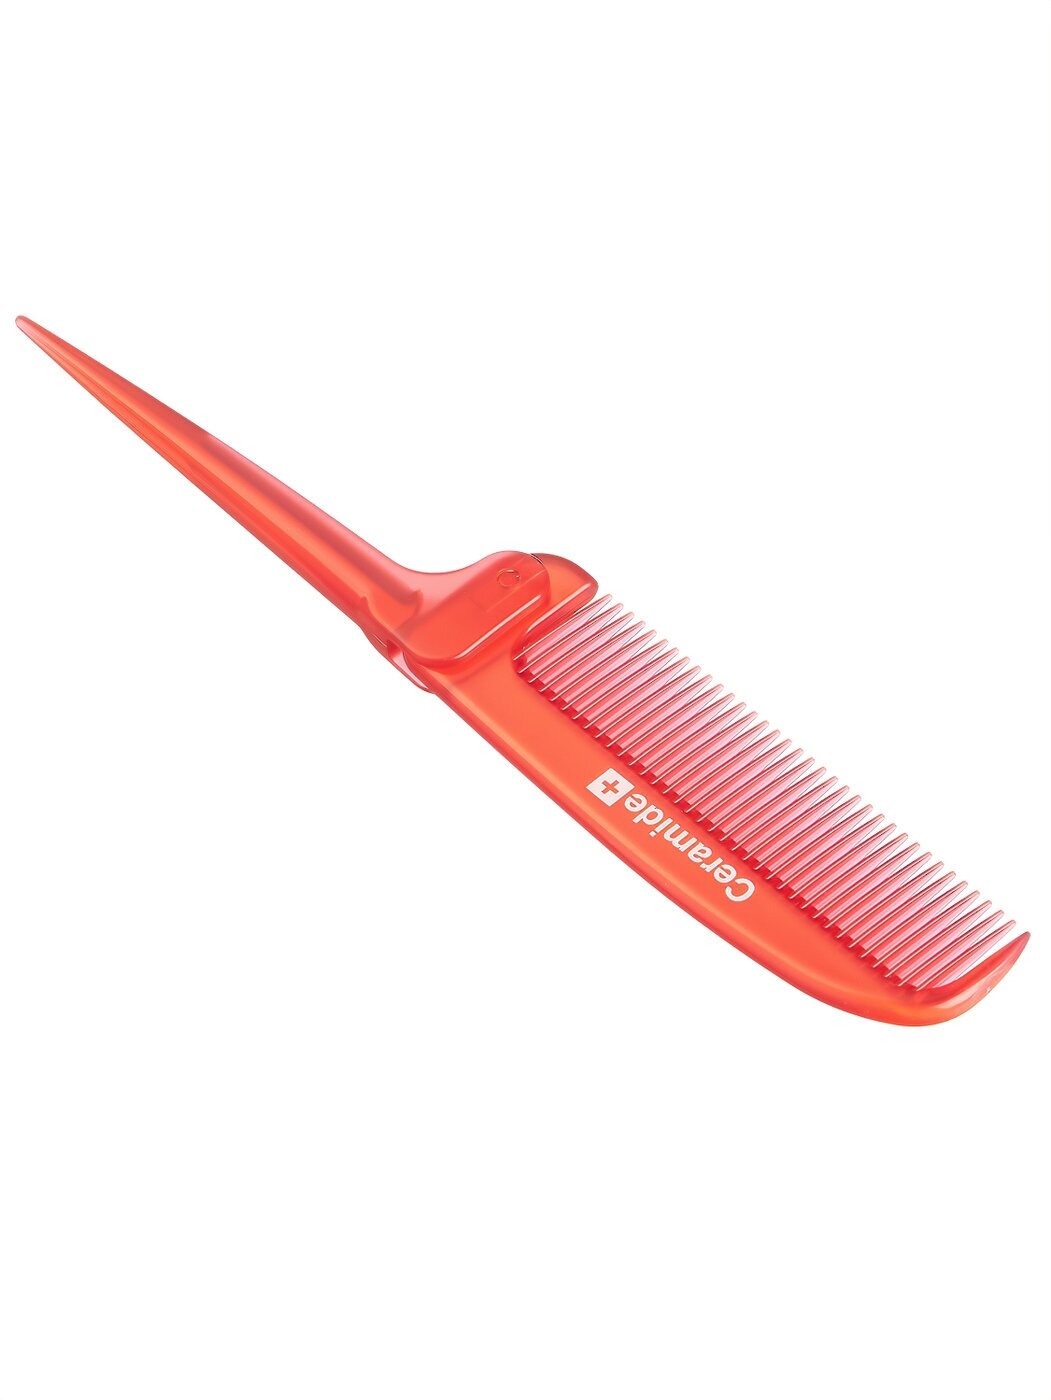 Складная расческа Ceramide Brush для увлажнения и смягчения волос с церамидами